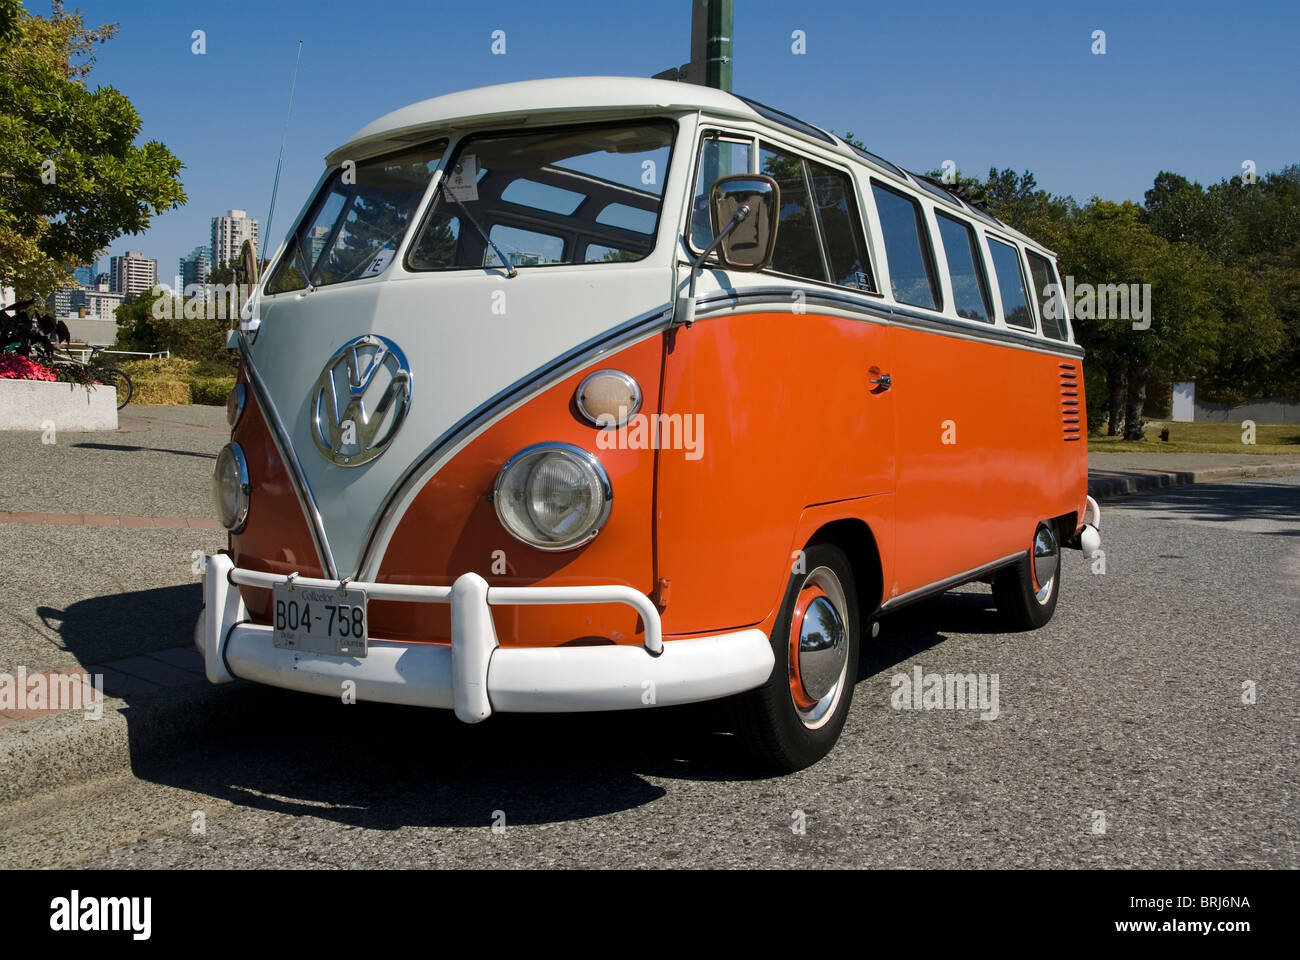 Volkswagen kombi immagini e fotografie stock ad alta risoluzione - Alamy